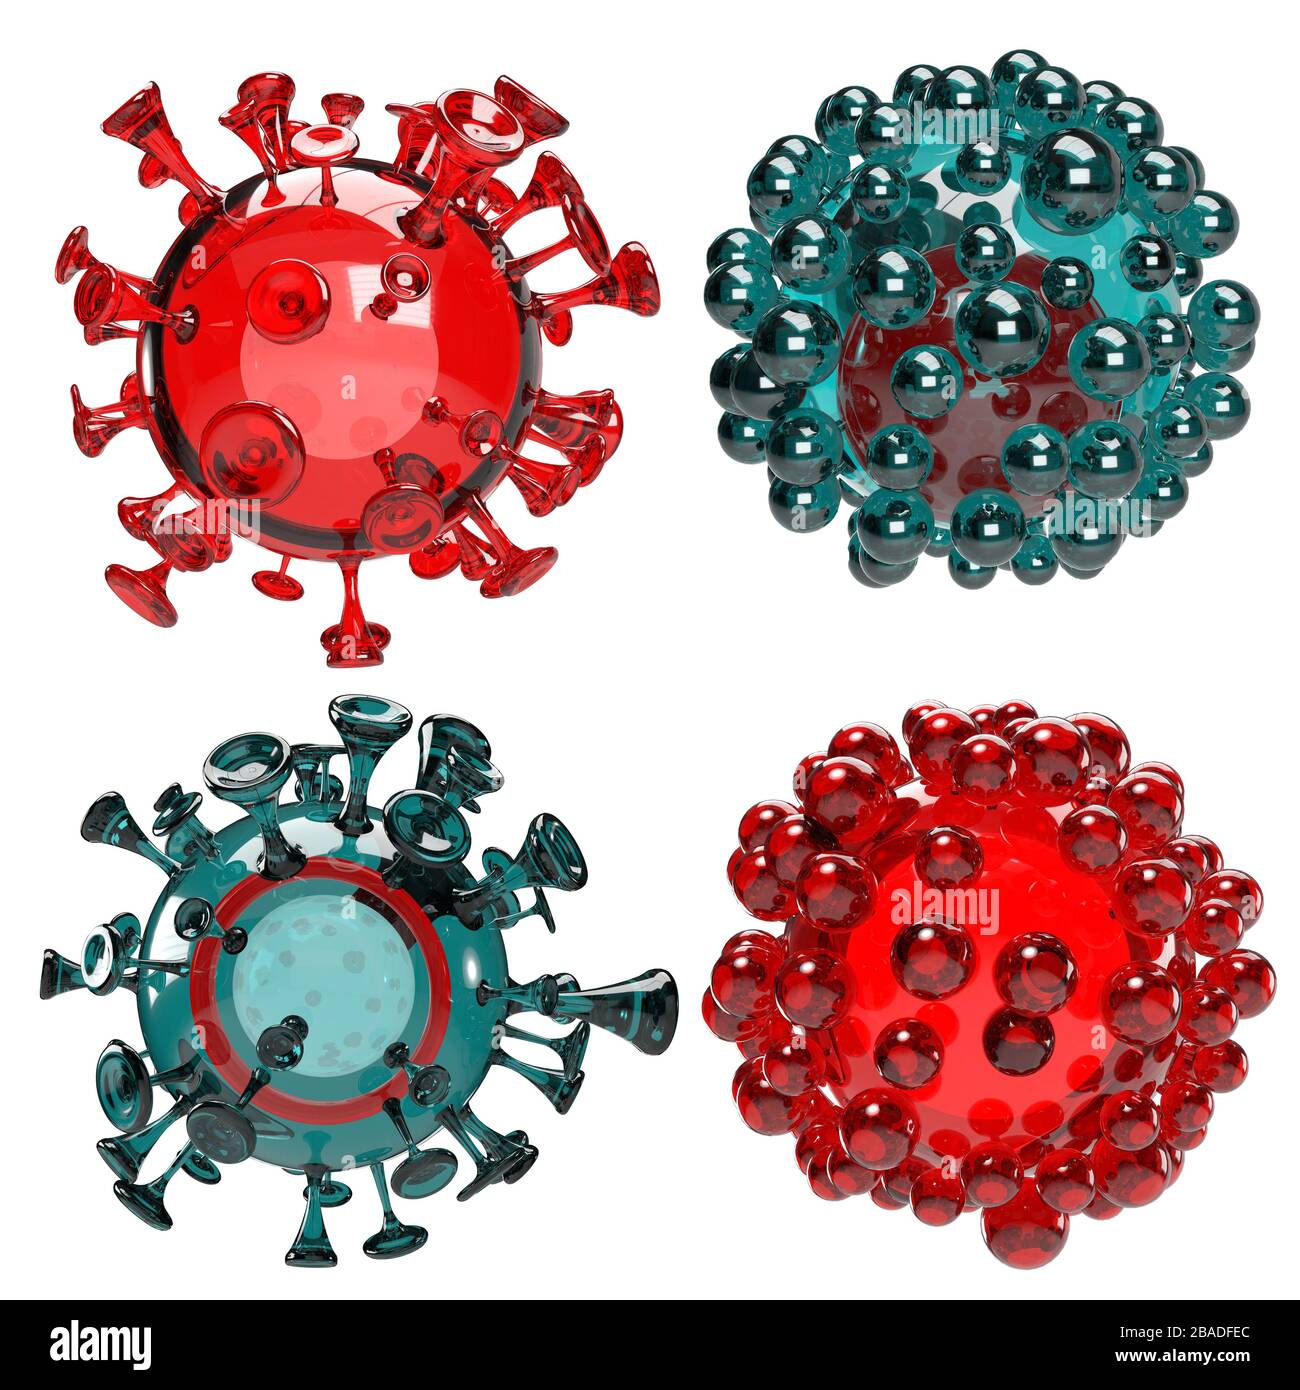 Abstract science 3d corona virus outbreak illustration Stock Photo